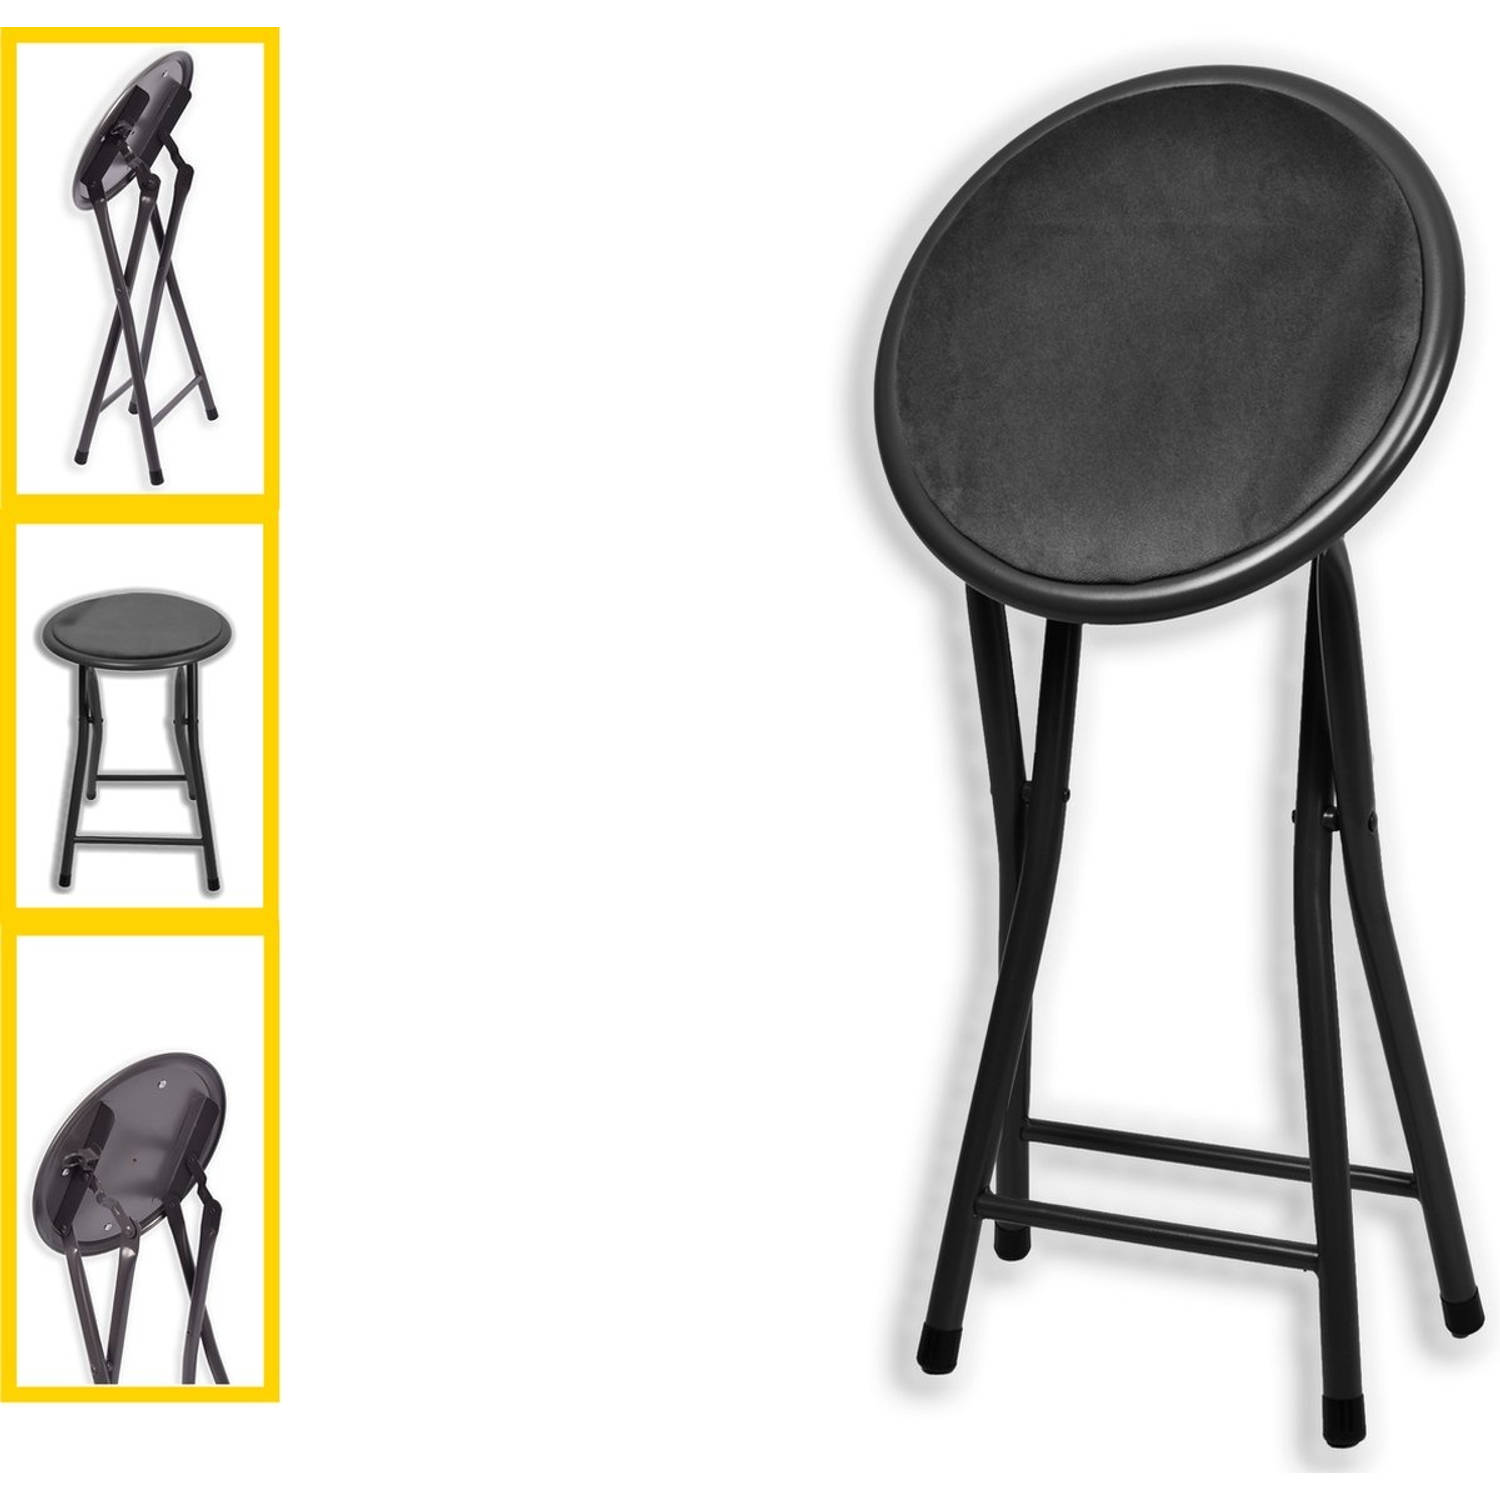 Klapstoel met zithoogte van 45 cm - Vouwkrukje velvet zitvlak en rug bekleed - stoel- tafelstoel - klapstoel - Velvet klapstoel - Luxe klapstoel - Met kussentjes - FLUWEEL- Stoelen